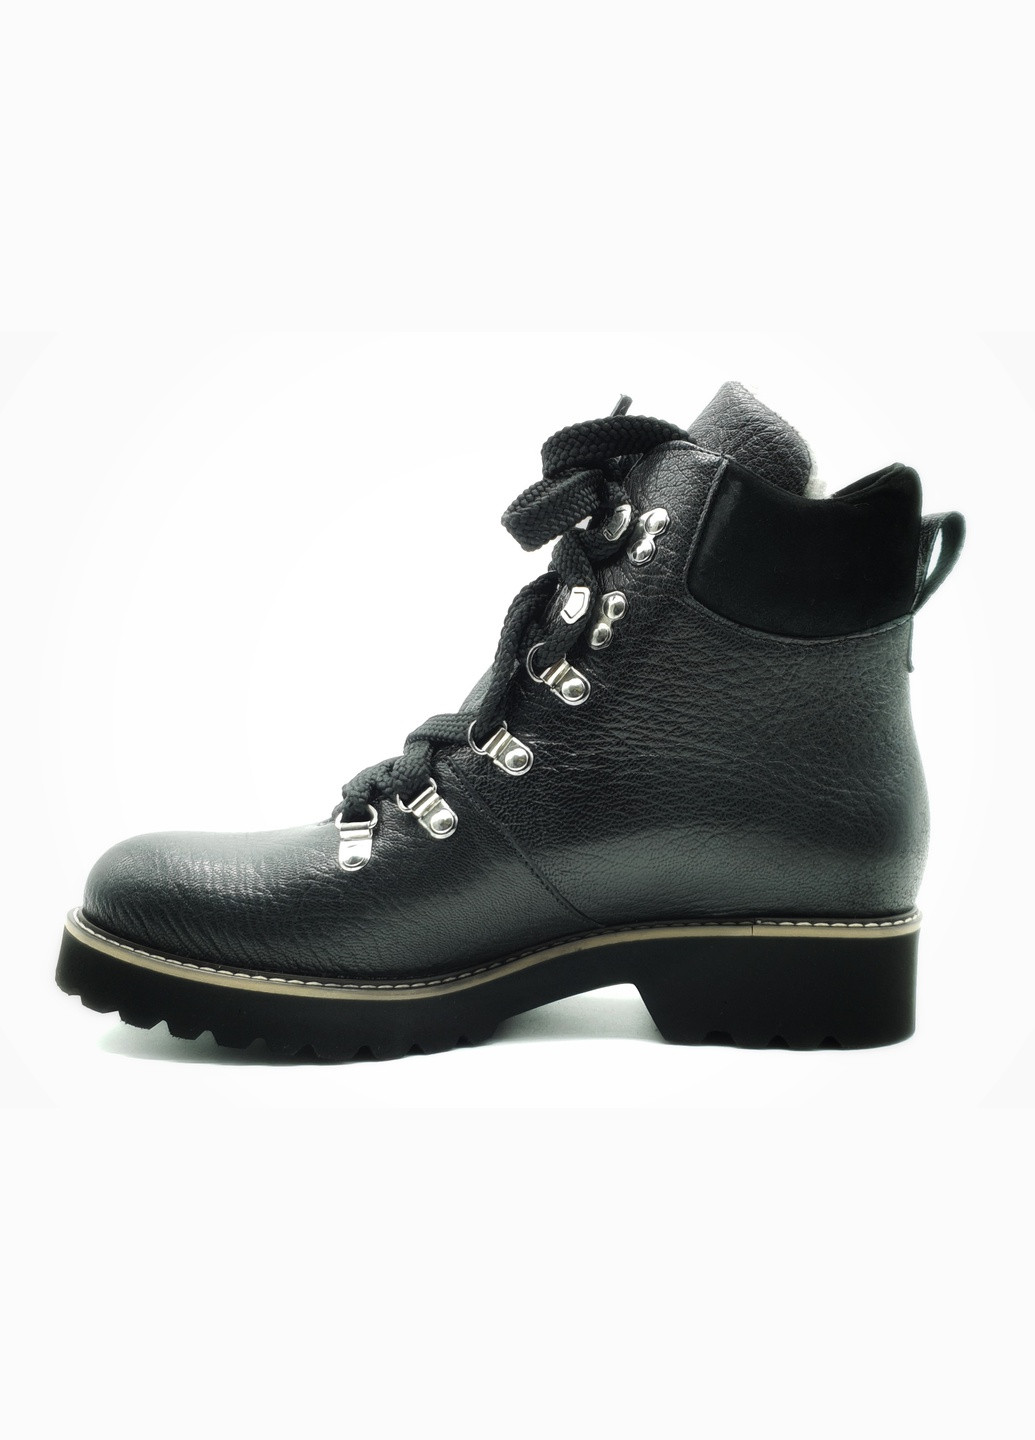 Осенние женские ботинки зимние черные кожаные p-10-1 25 см (р) patterns